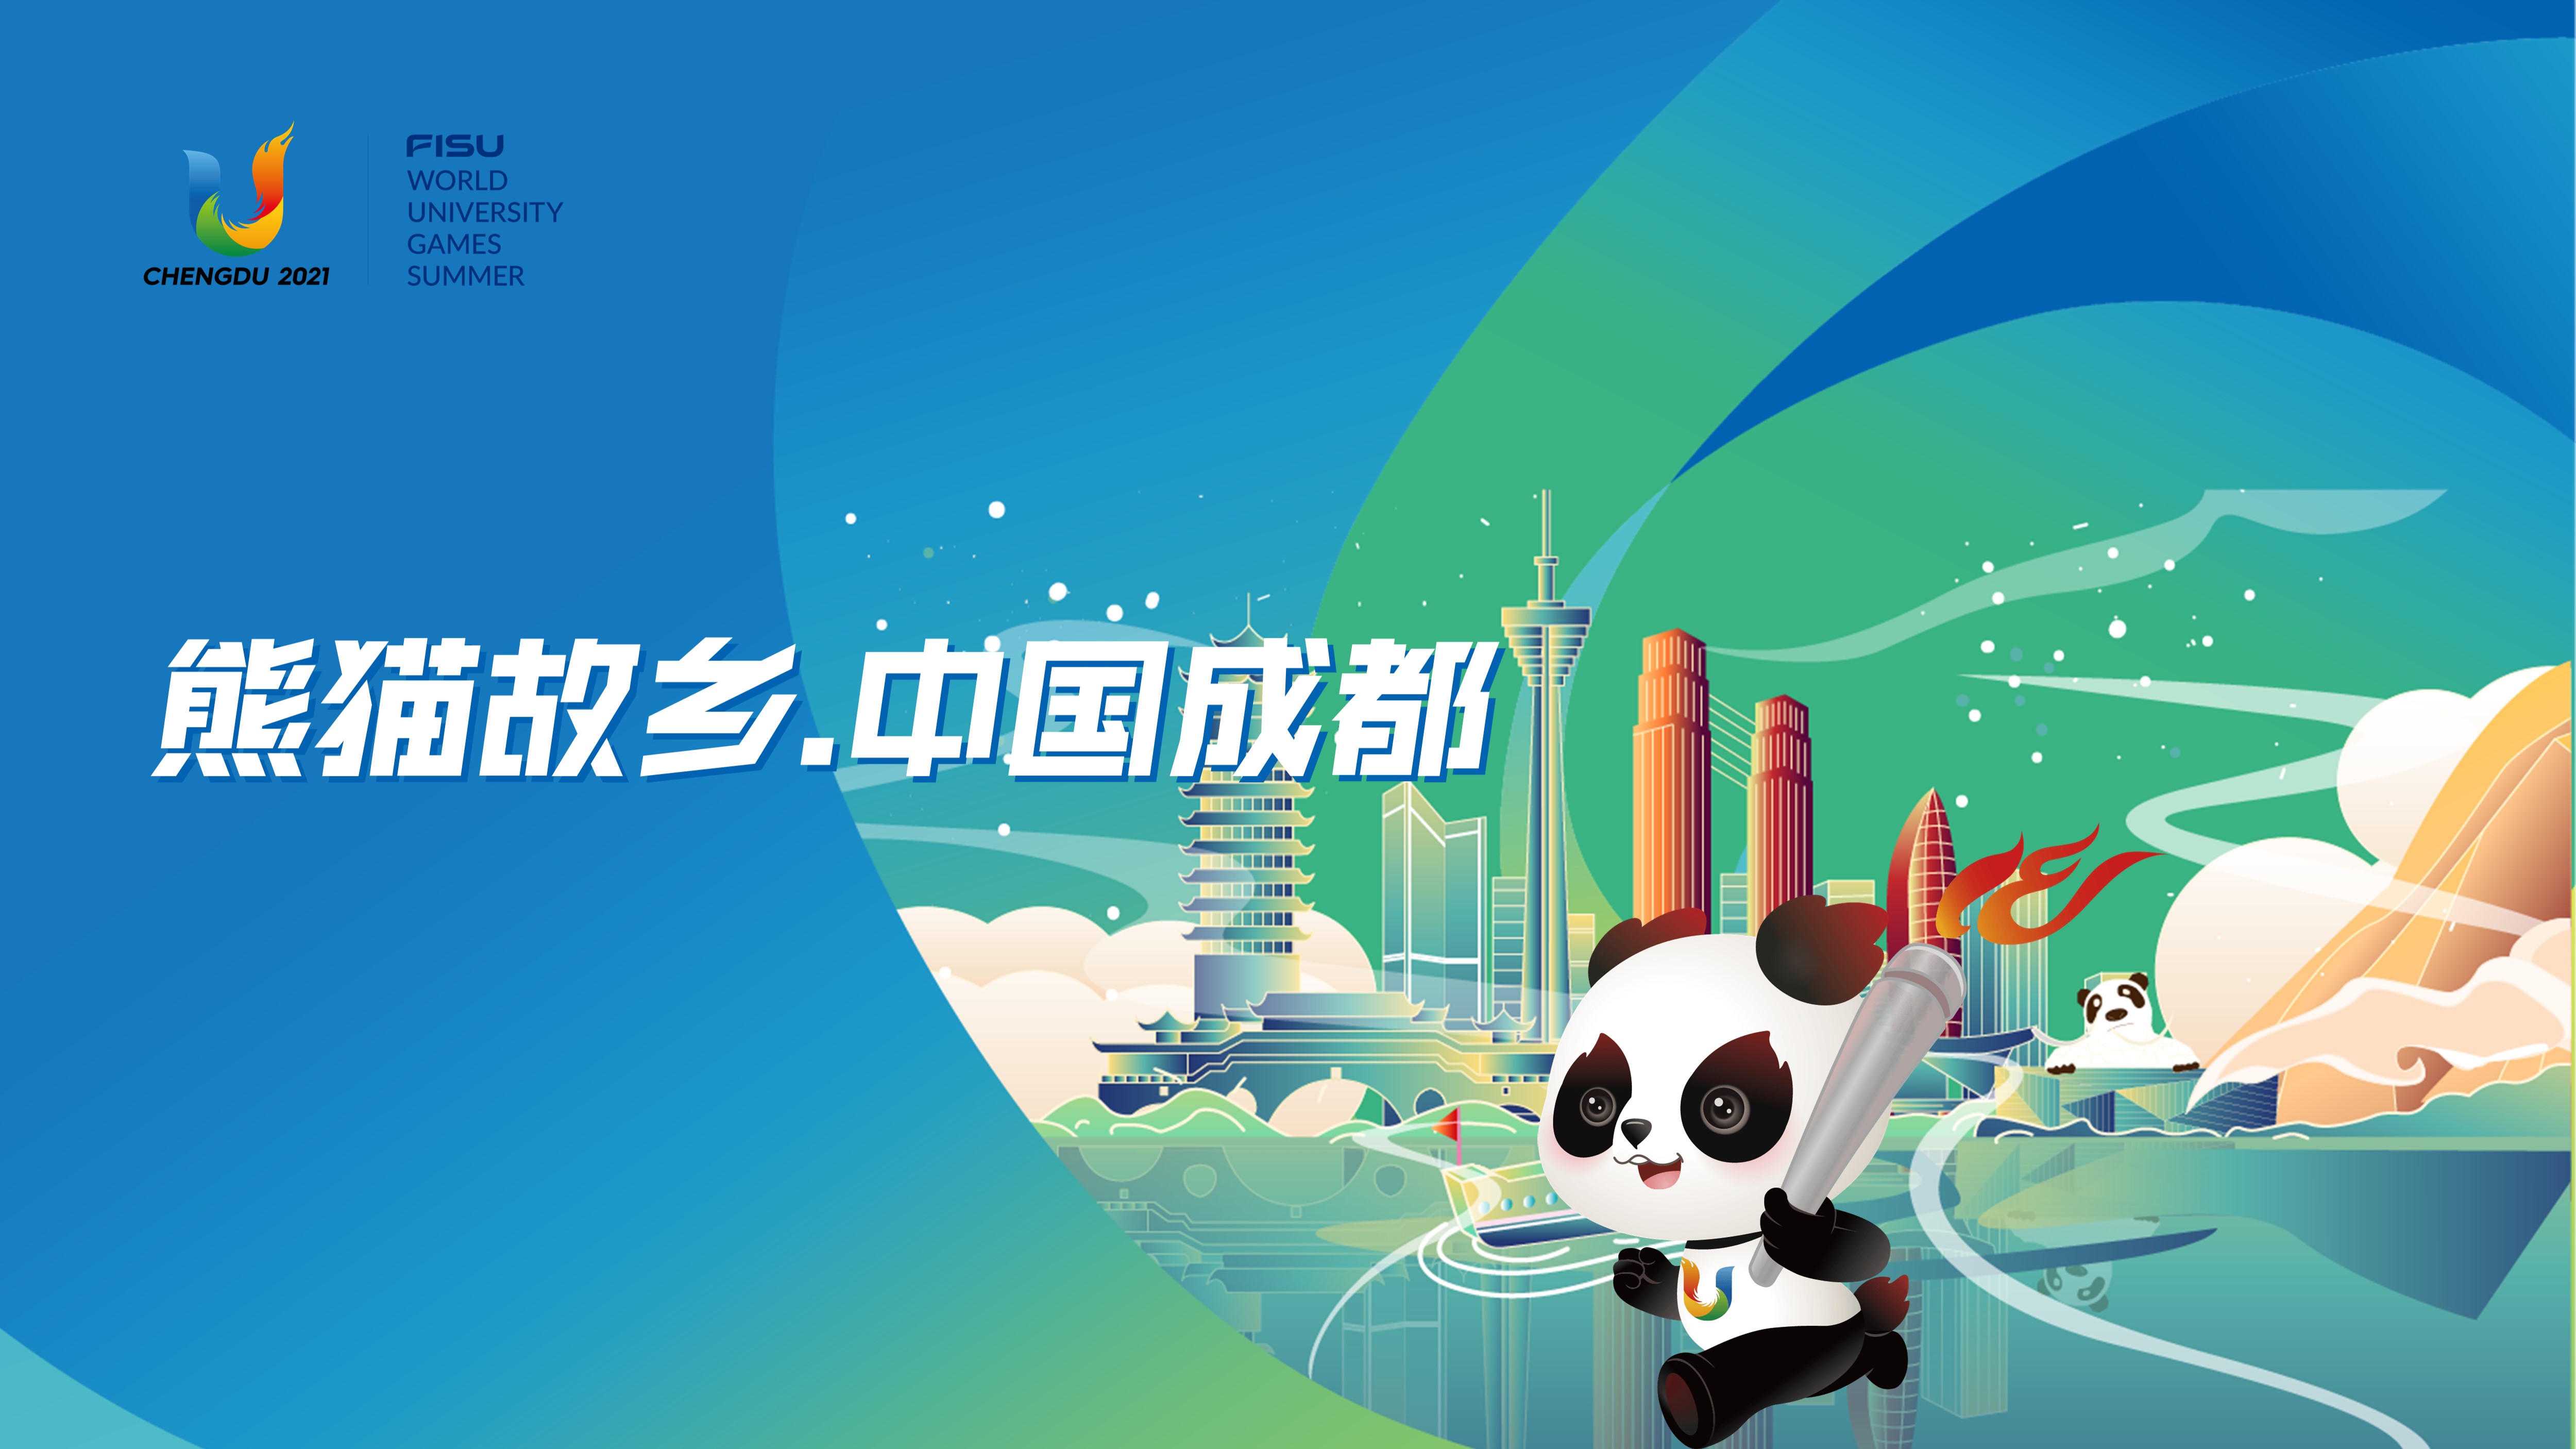 熊猫故乡·中国成都大运会城市推荐ppt设计制作